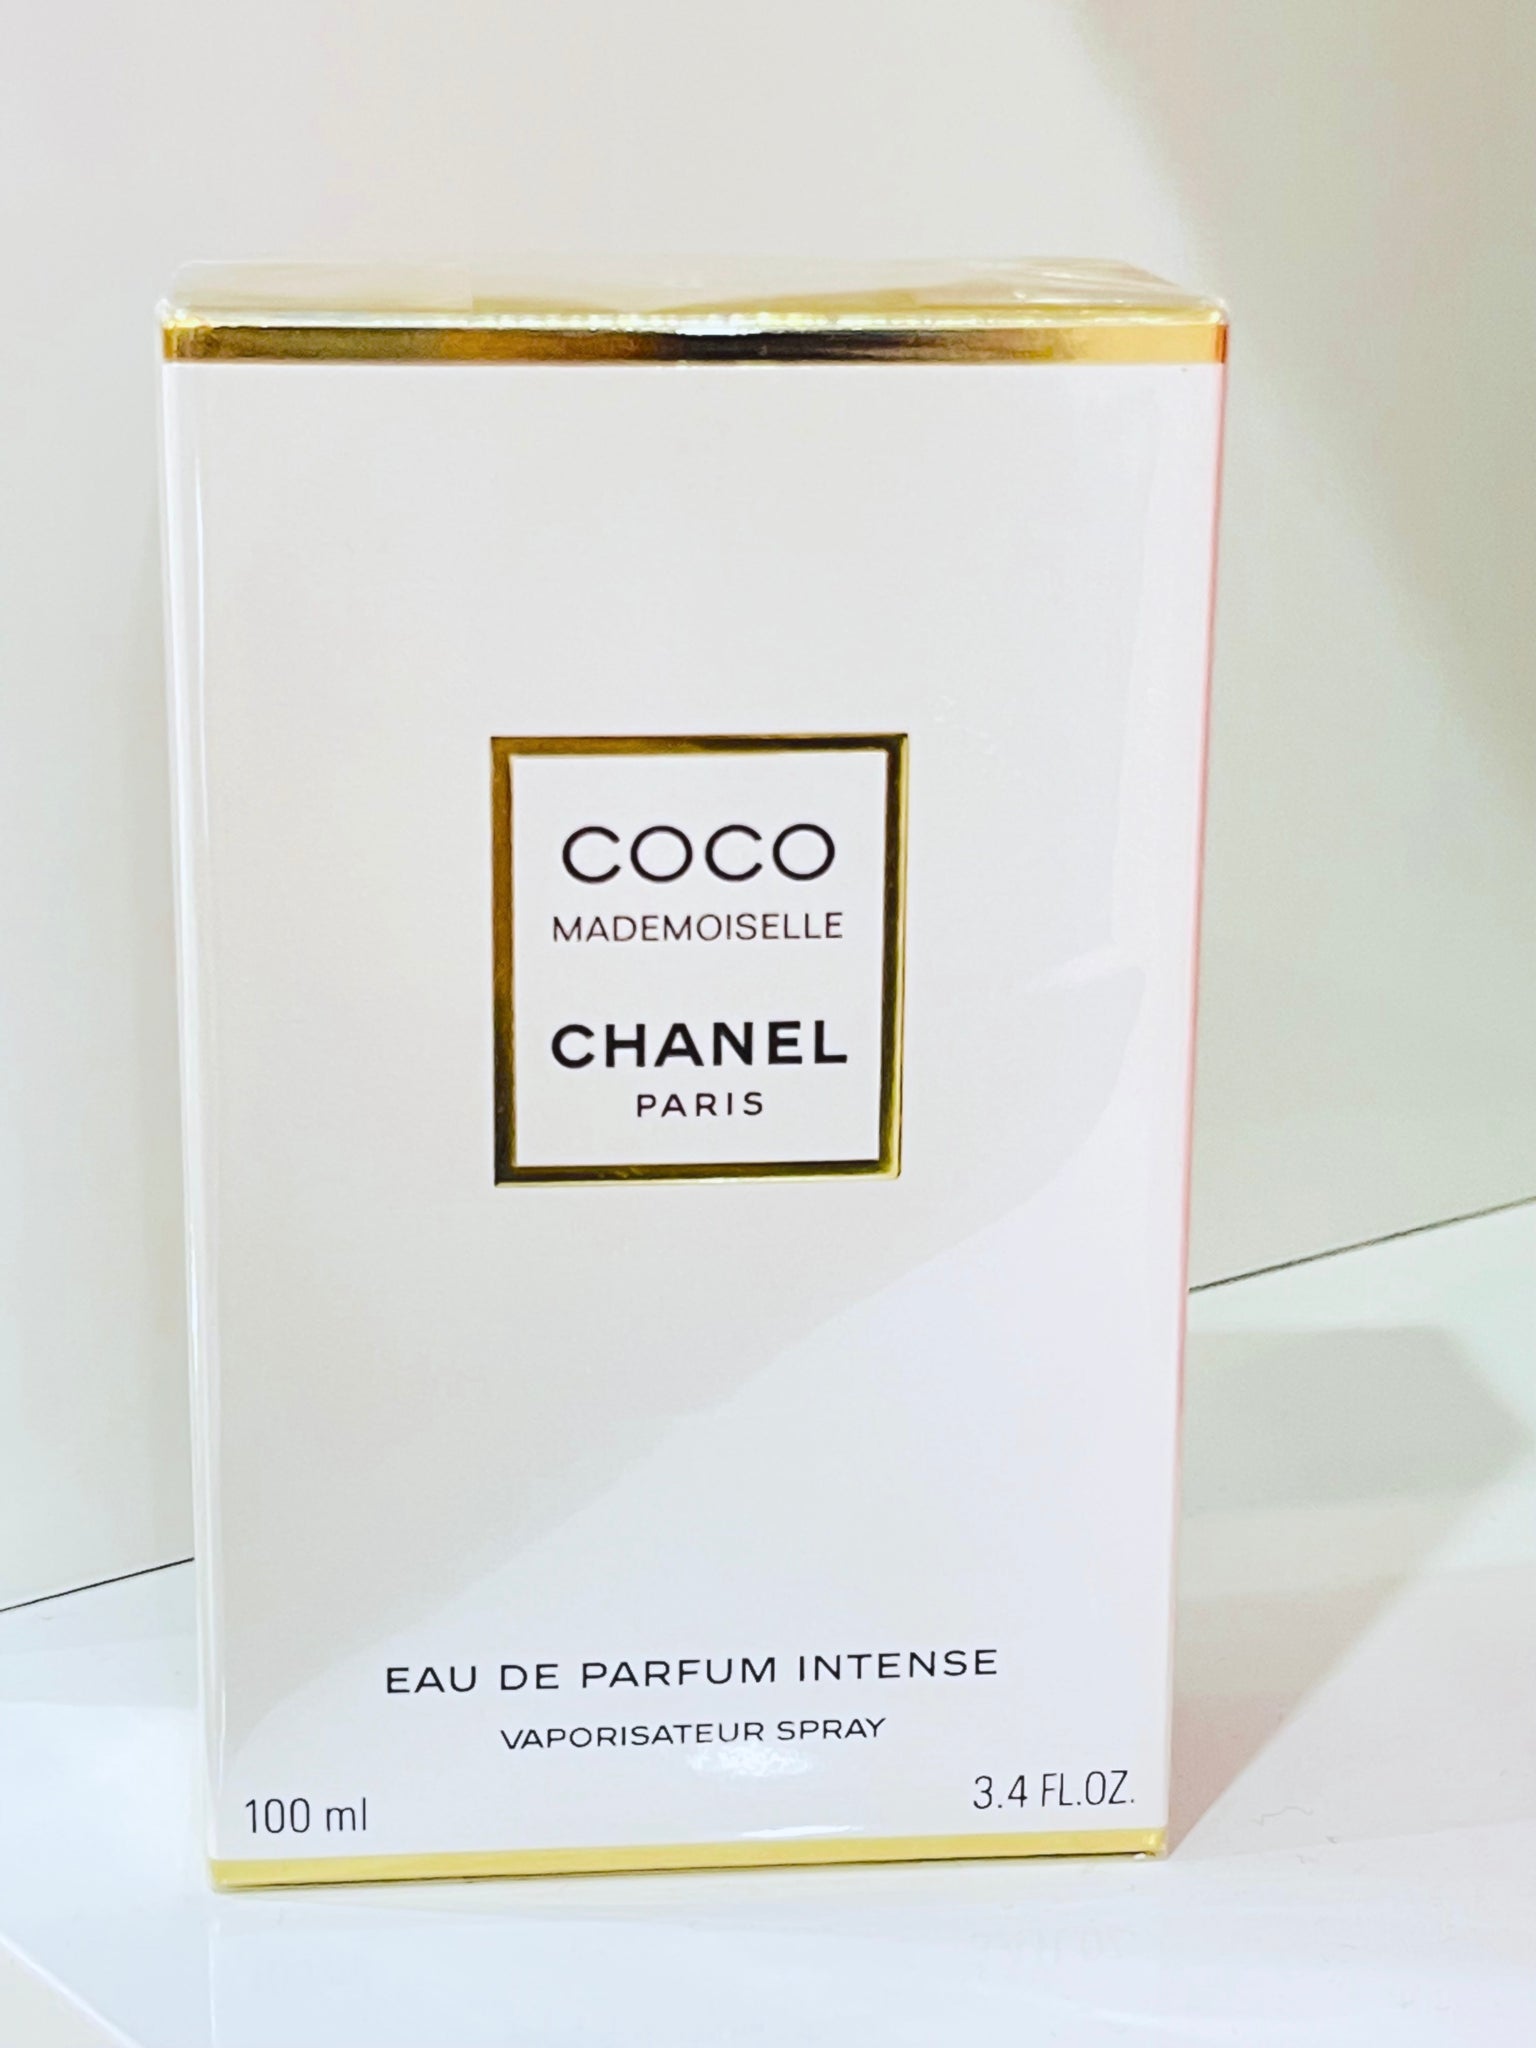 COCO MADEMOISELLE CHANEL Eau de Parfum Intense 3.4oz – always